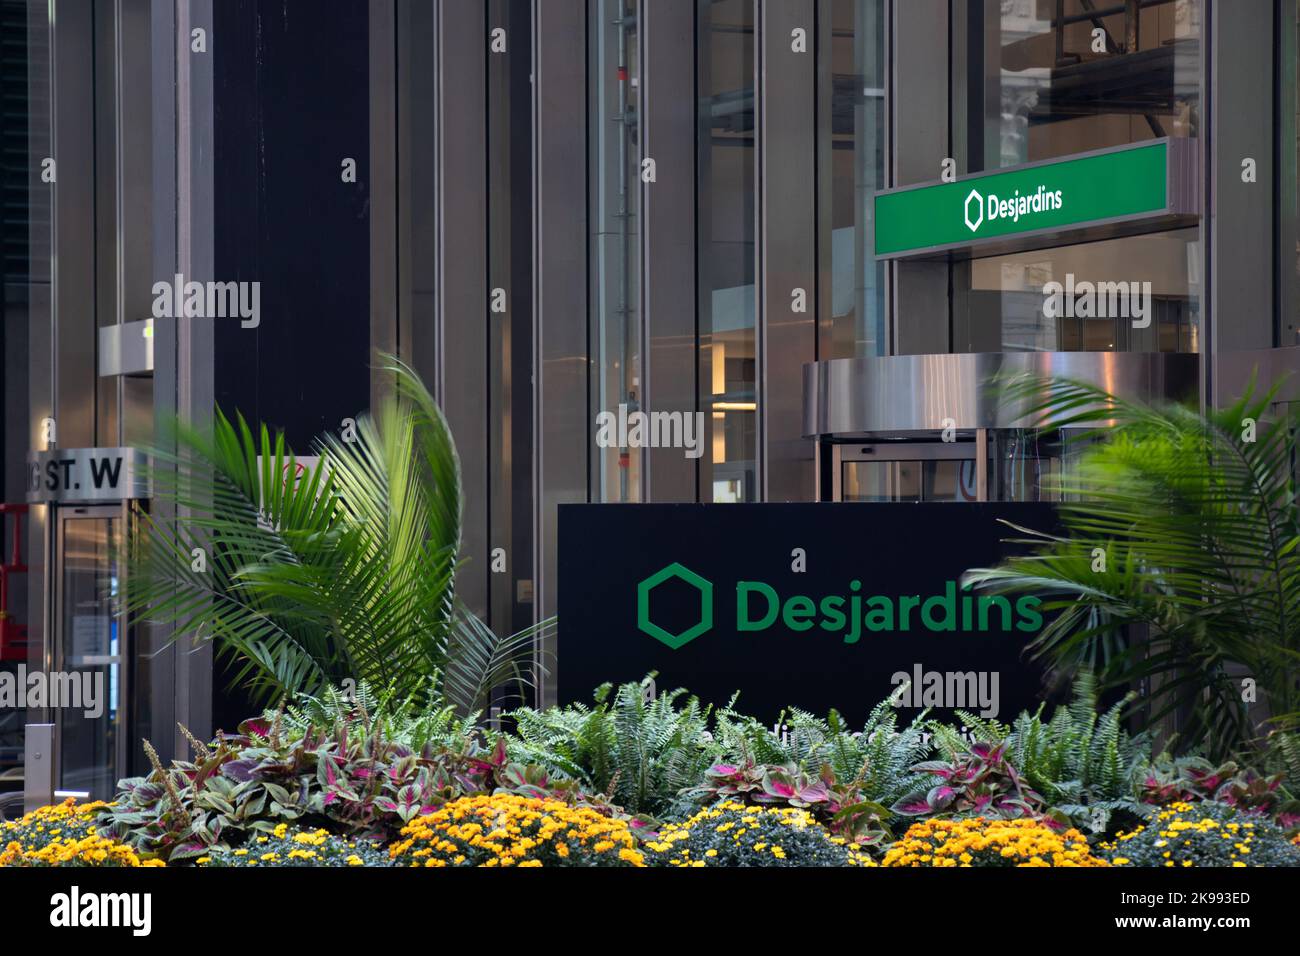 Le logo du mouvement Desjardins est visible devant un immeuble de bureaux du centre-ville de Toronto. Banque D'Images